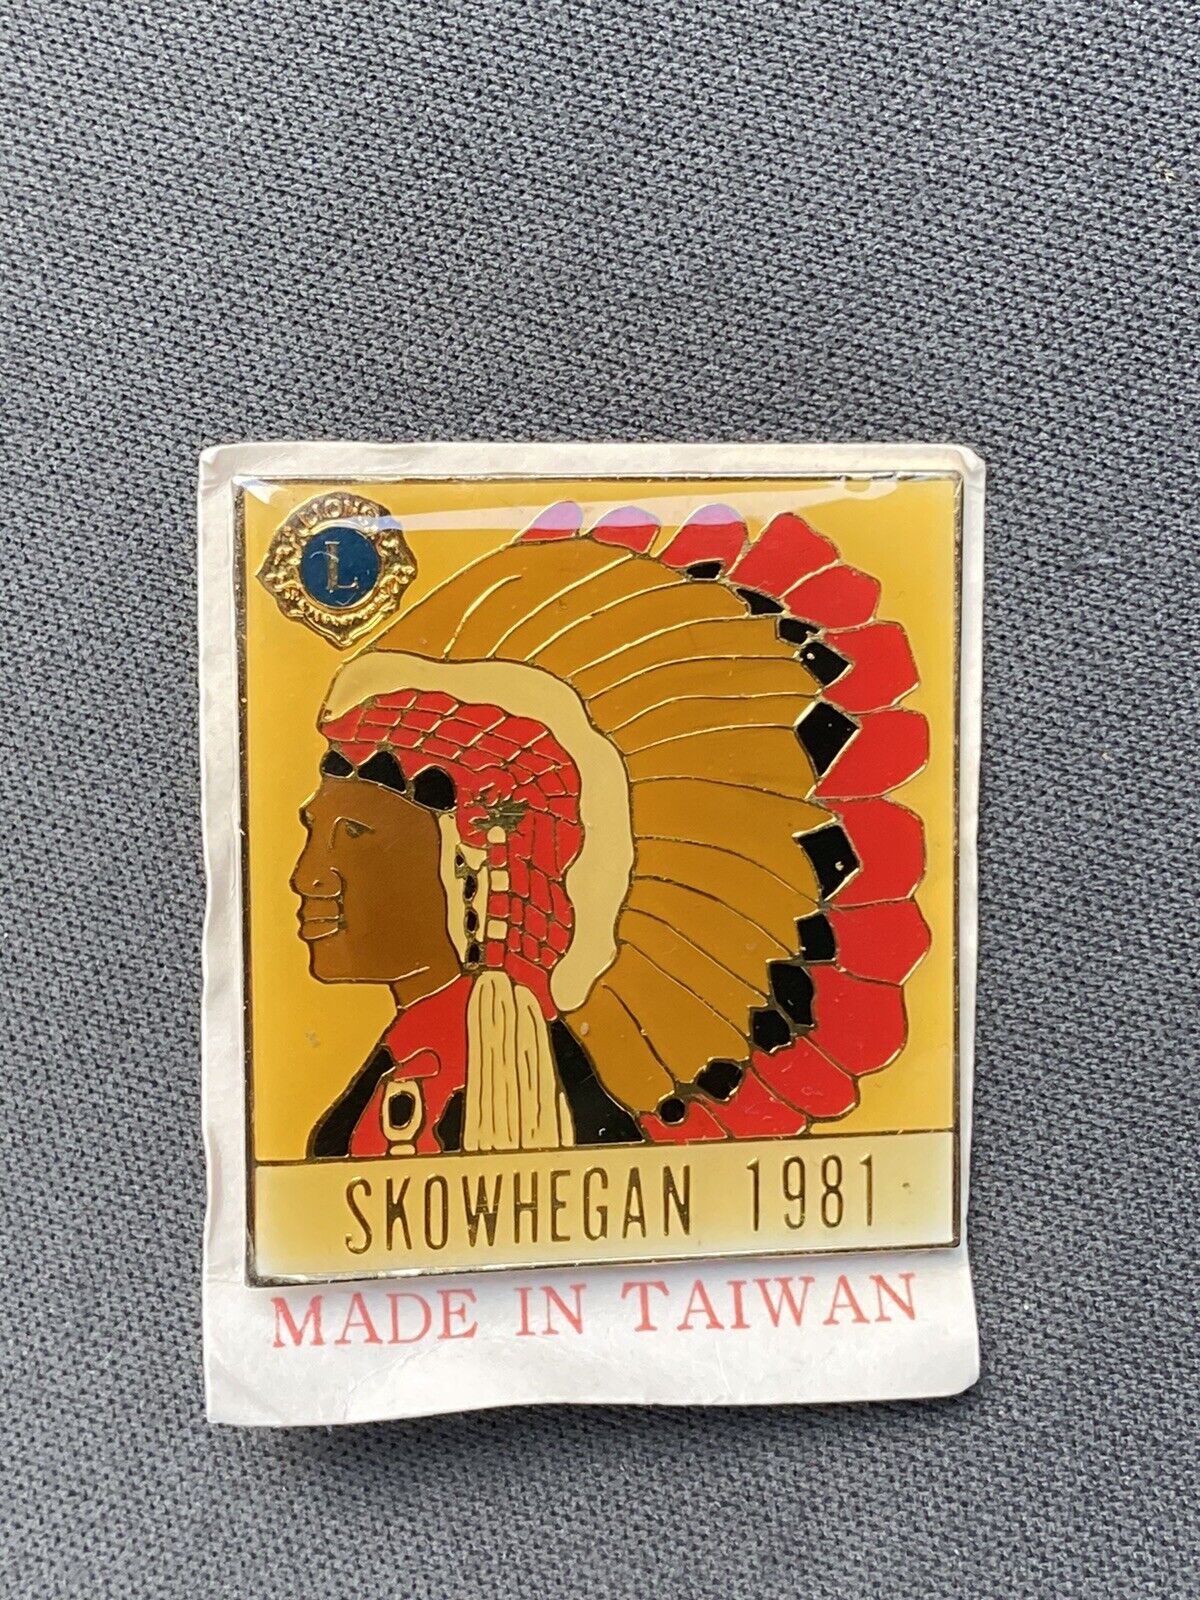 Skowhegan 1981 Lions Club Pin